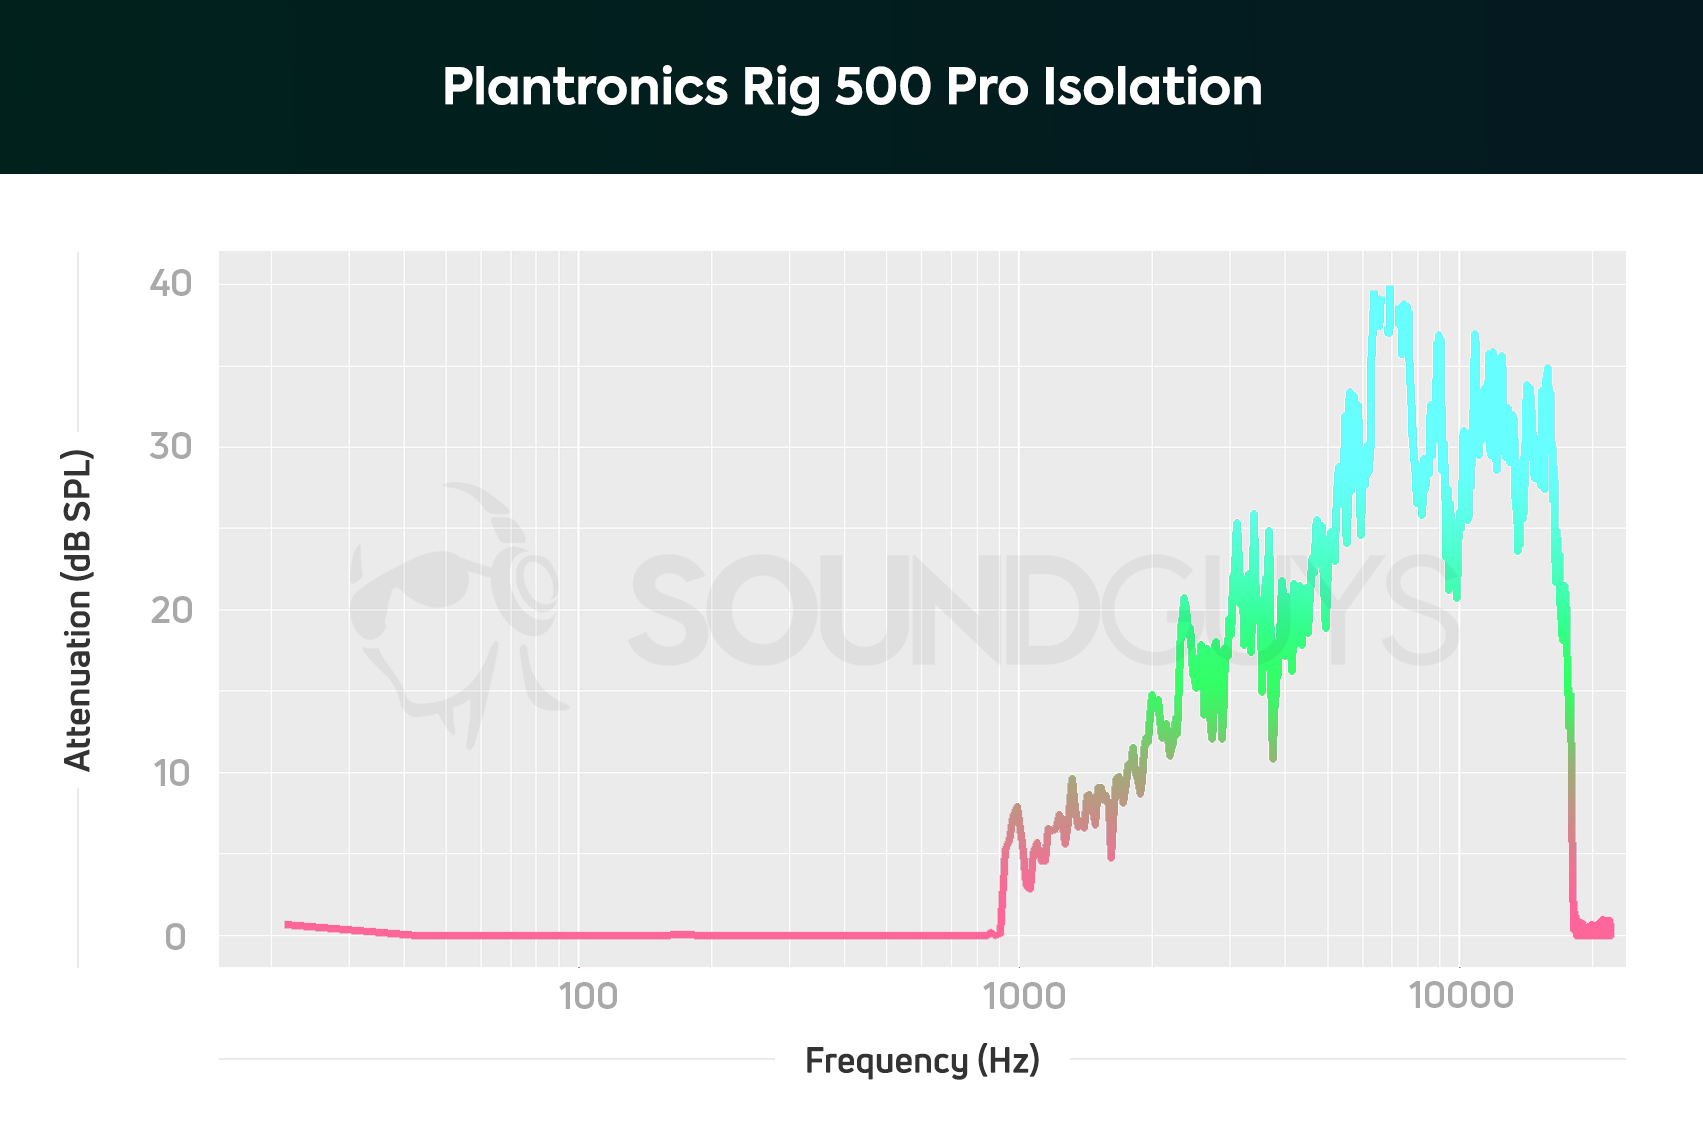 Plantronics Rig 500 Pro isolation chart.